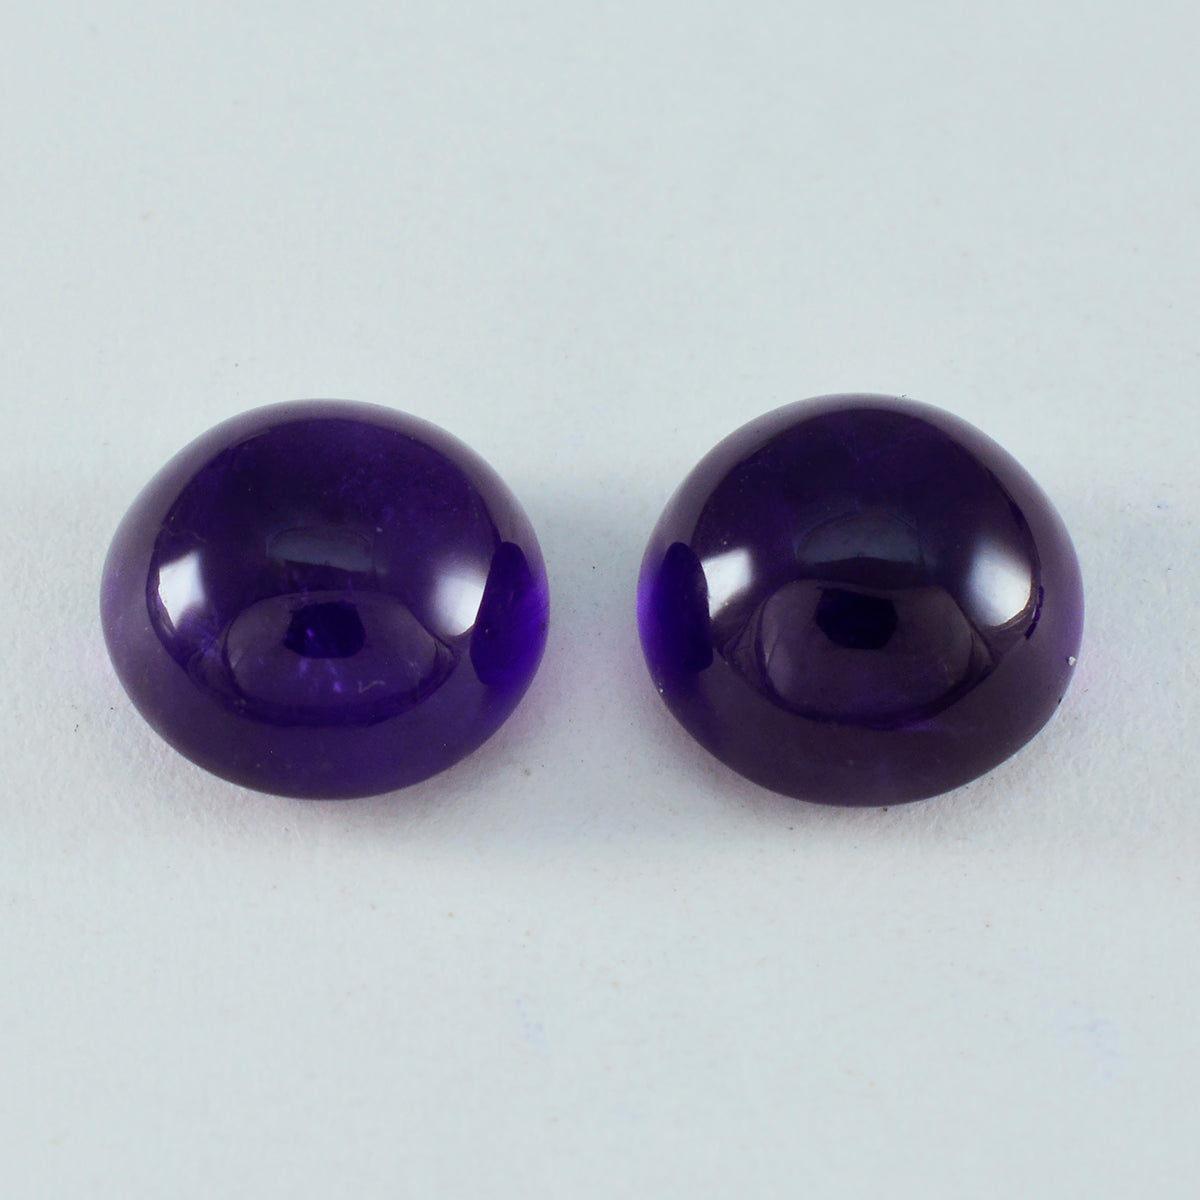 Riyogems 1PC Purple Amethyst Cabochon 12x12 mm Round Shape A+ Quality Loose Gem